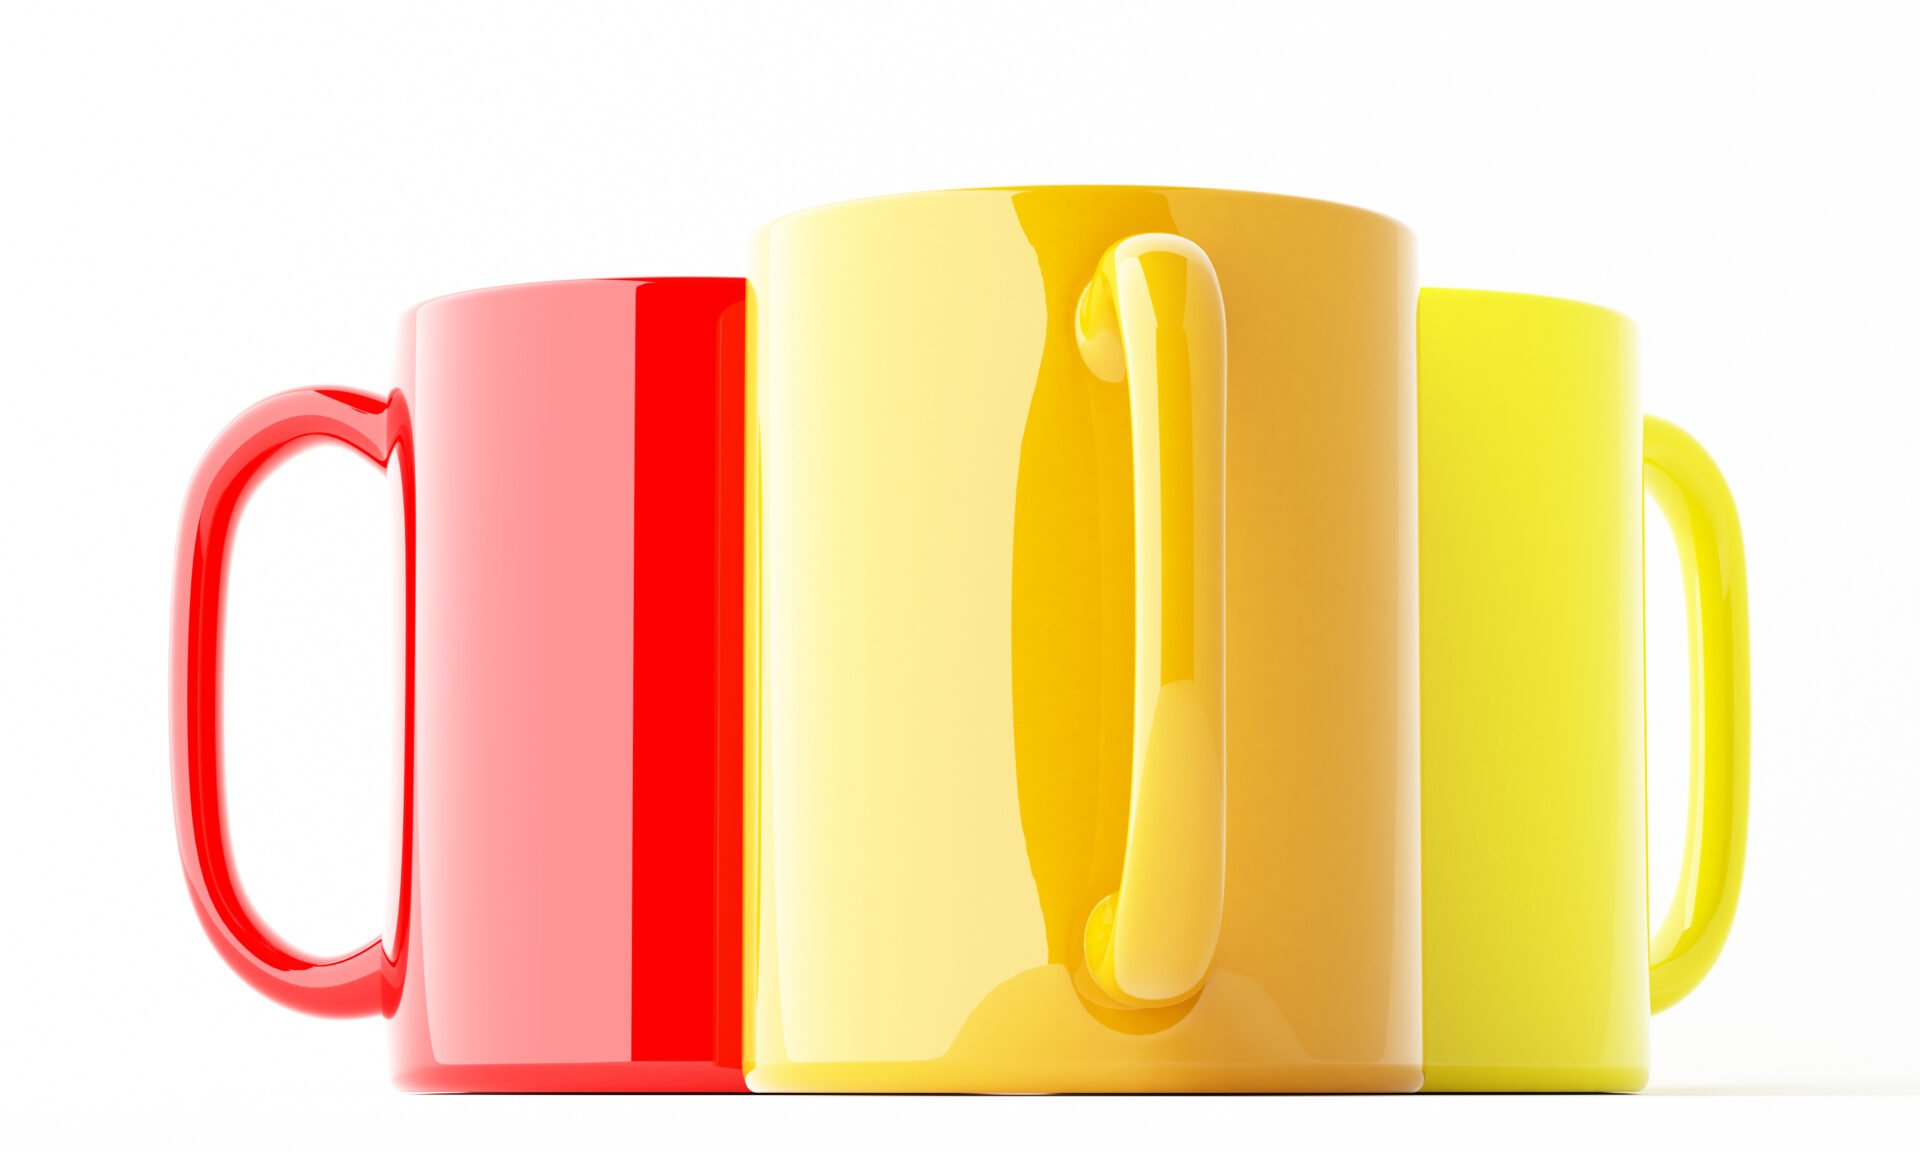 Toxic ceramic mugs with high levels of cadmium